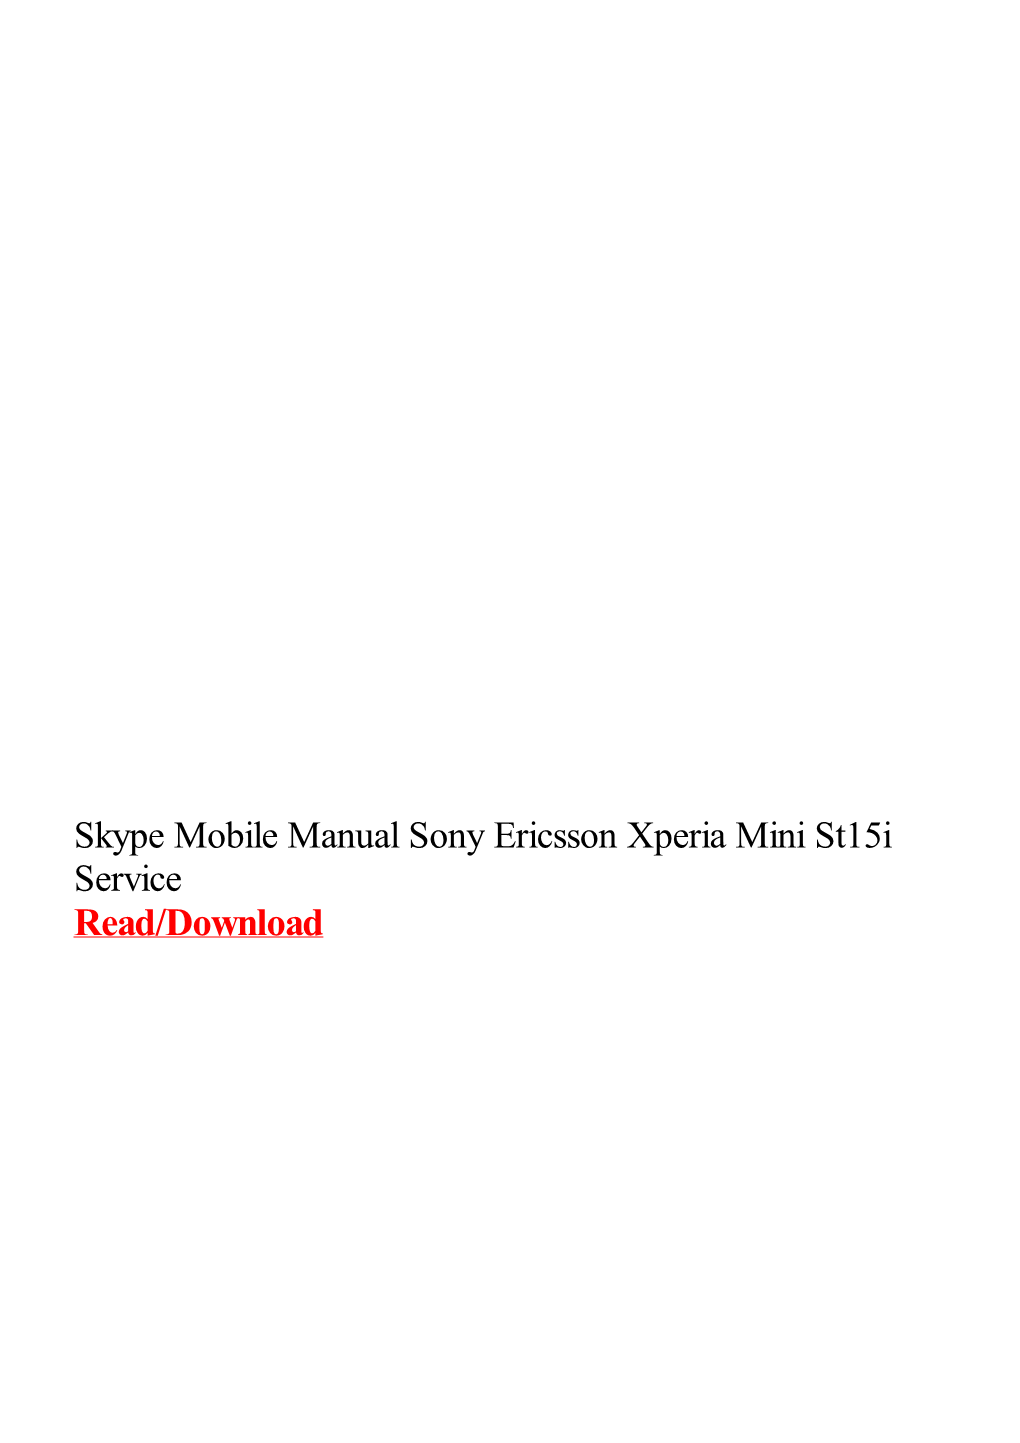 Skype Mobile Manual Sony Ericsson Xperia Mini St15i Service